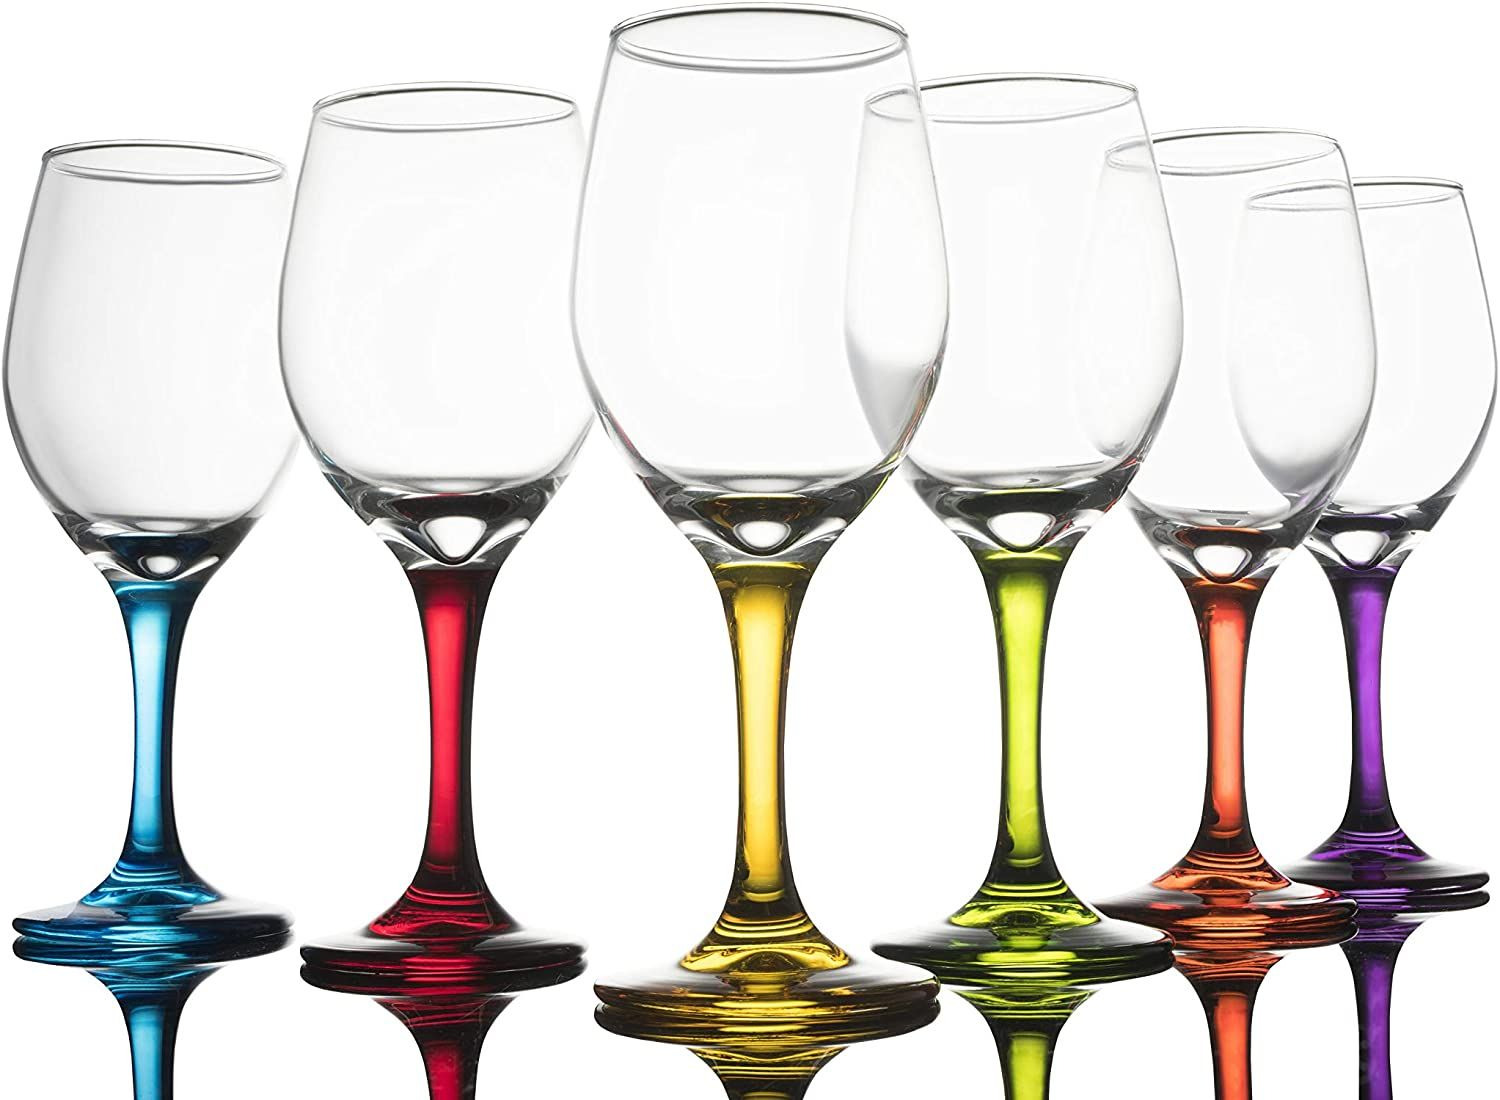 Trinkware Colored Stem Wine Glasses Set of 6 - 6 Count (Pack 1), Stemmed 